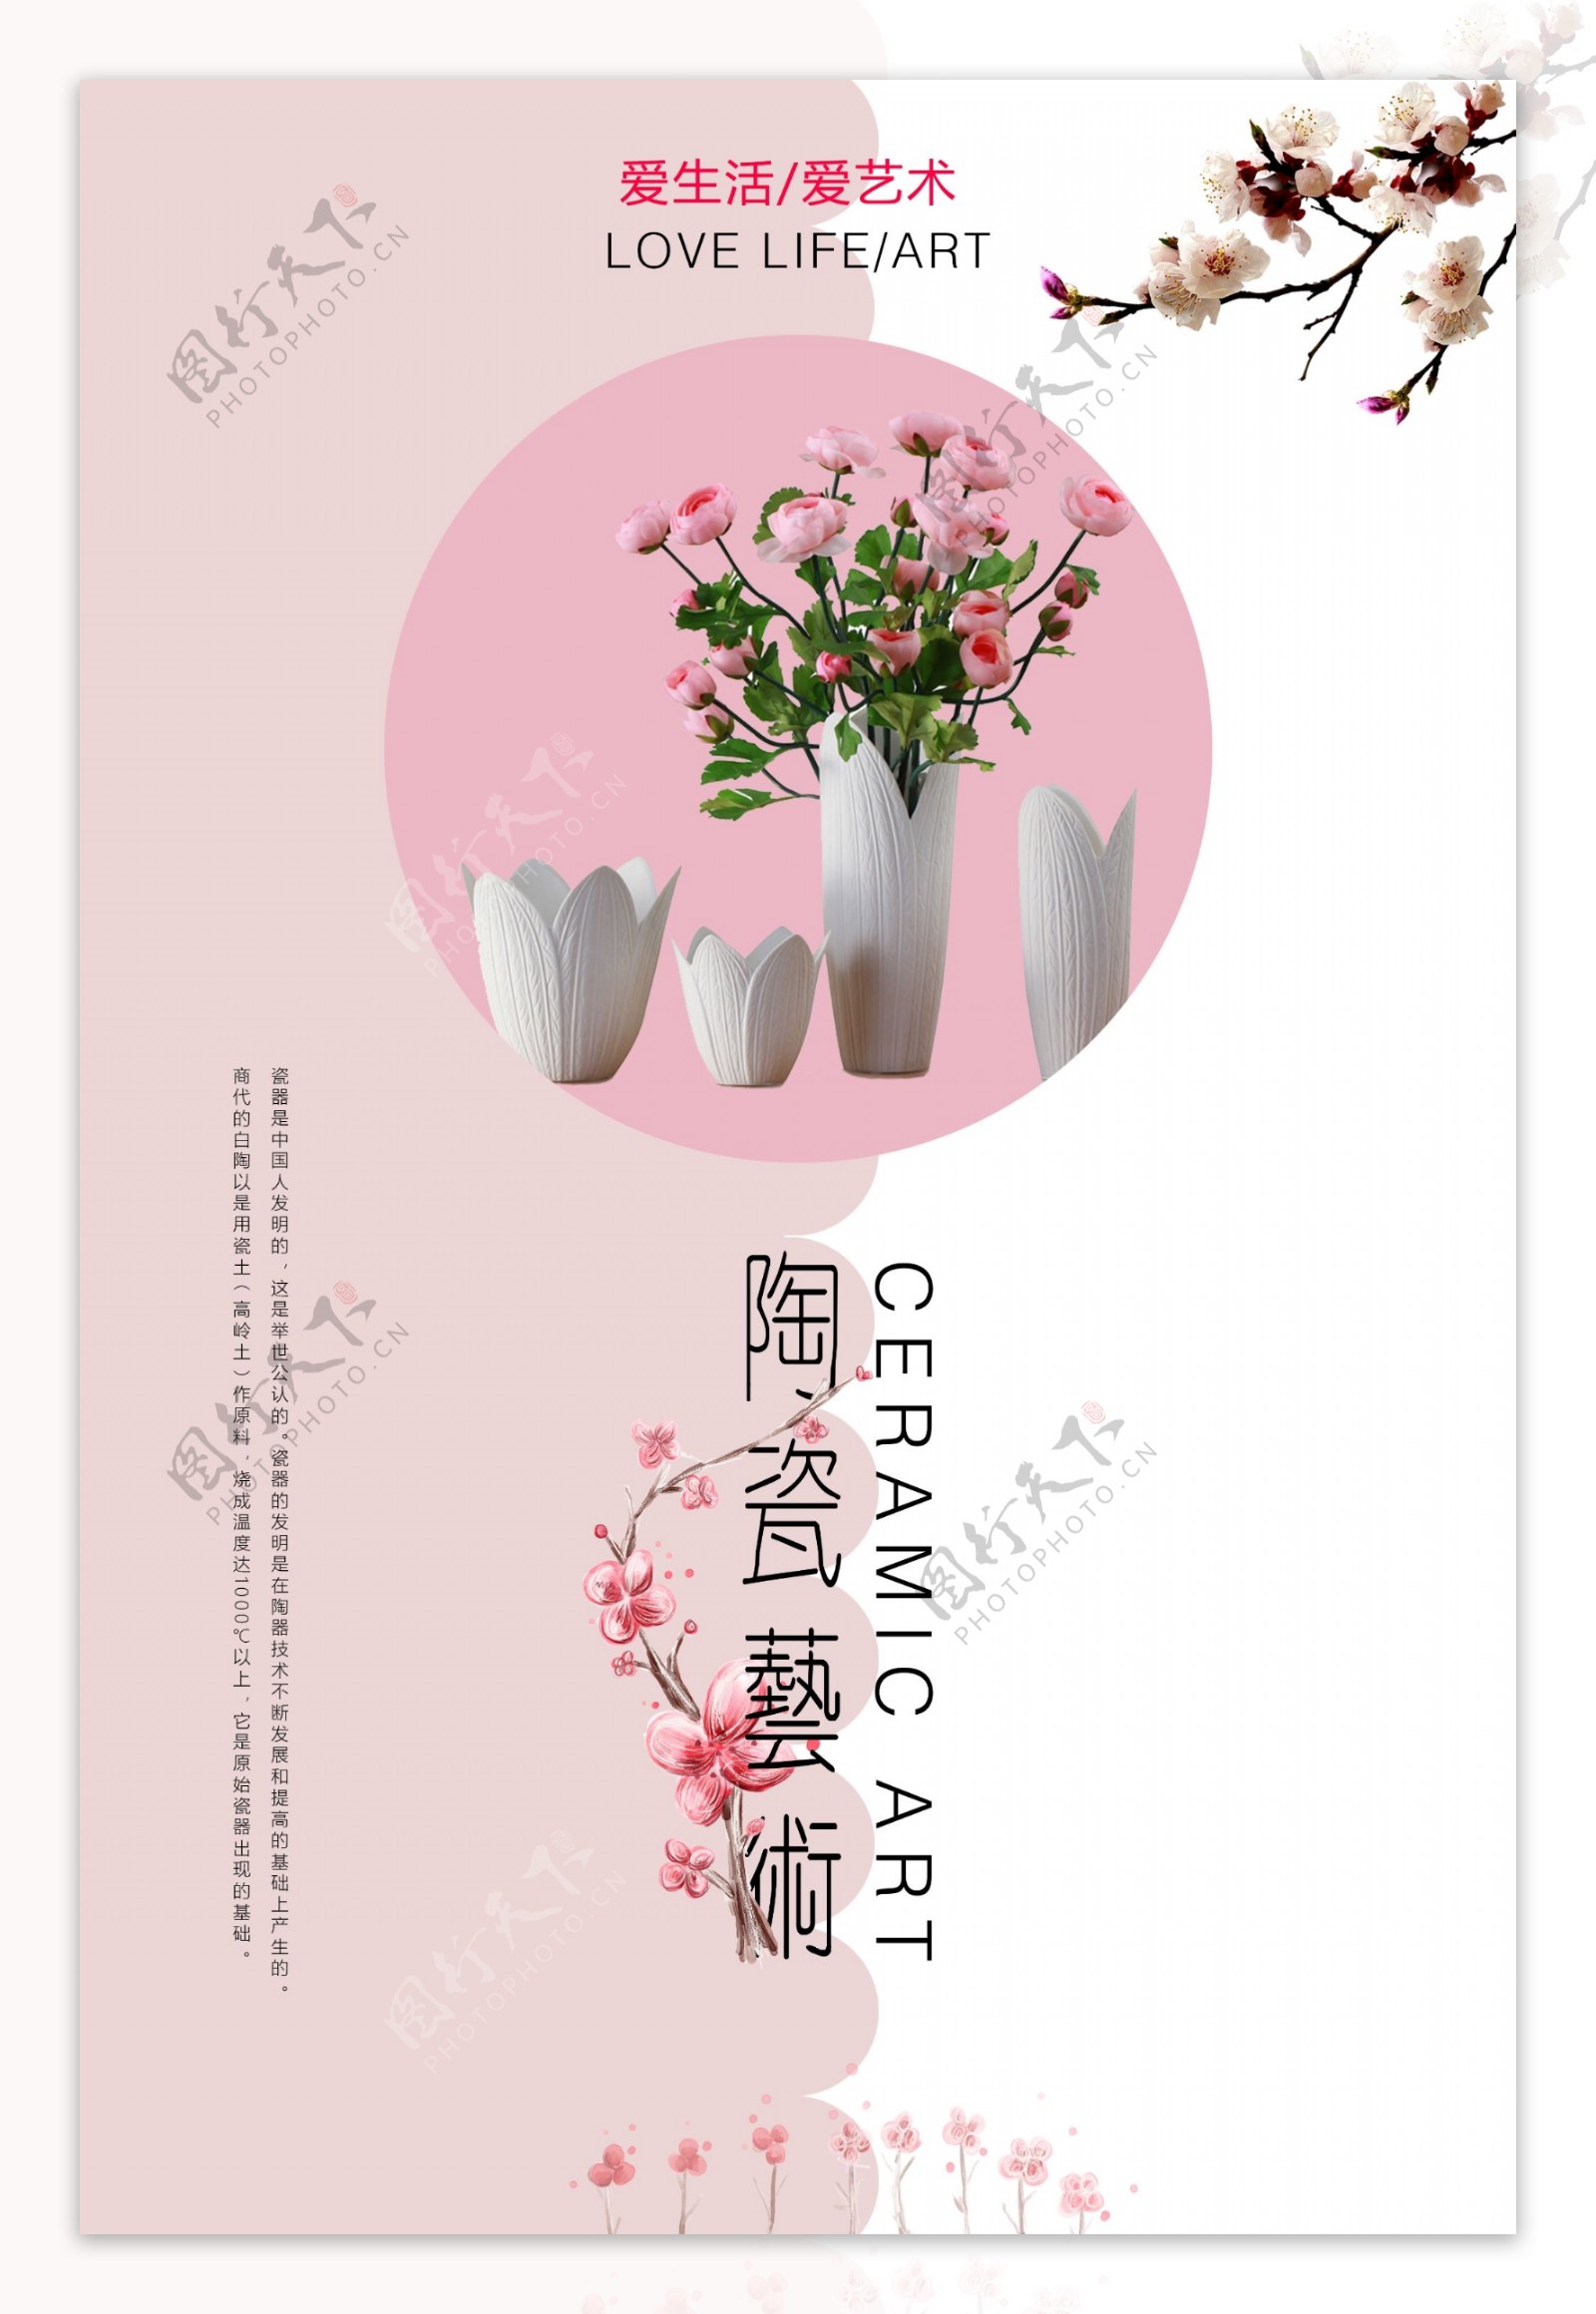 简约小清新风艺术陶瓷工艺海报